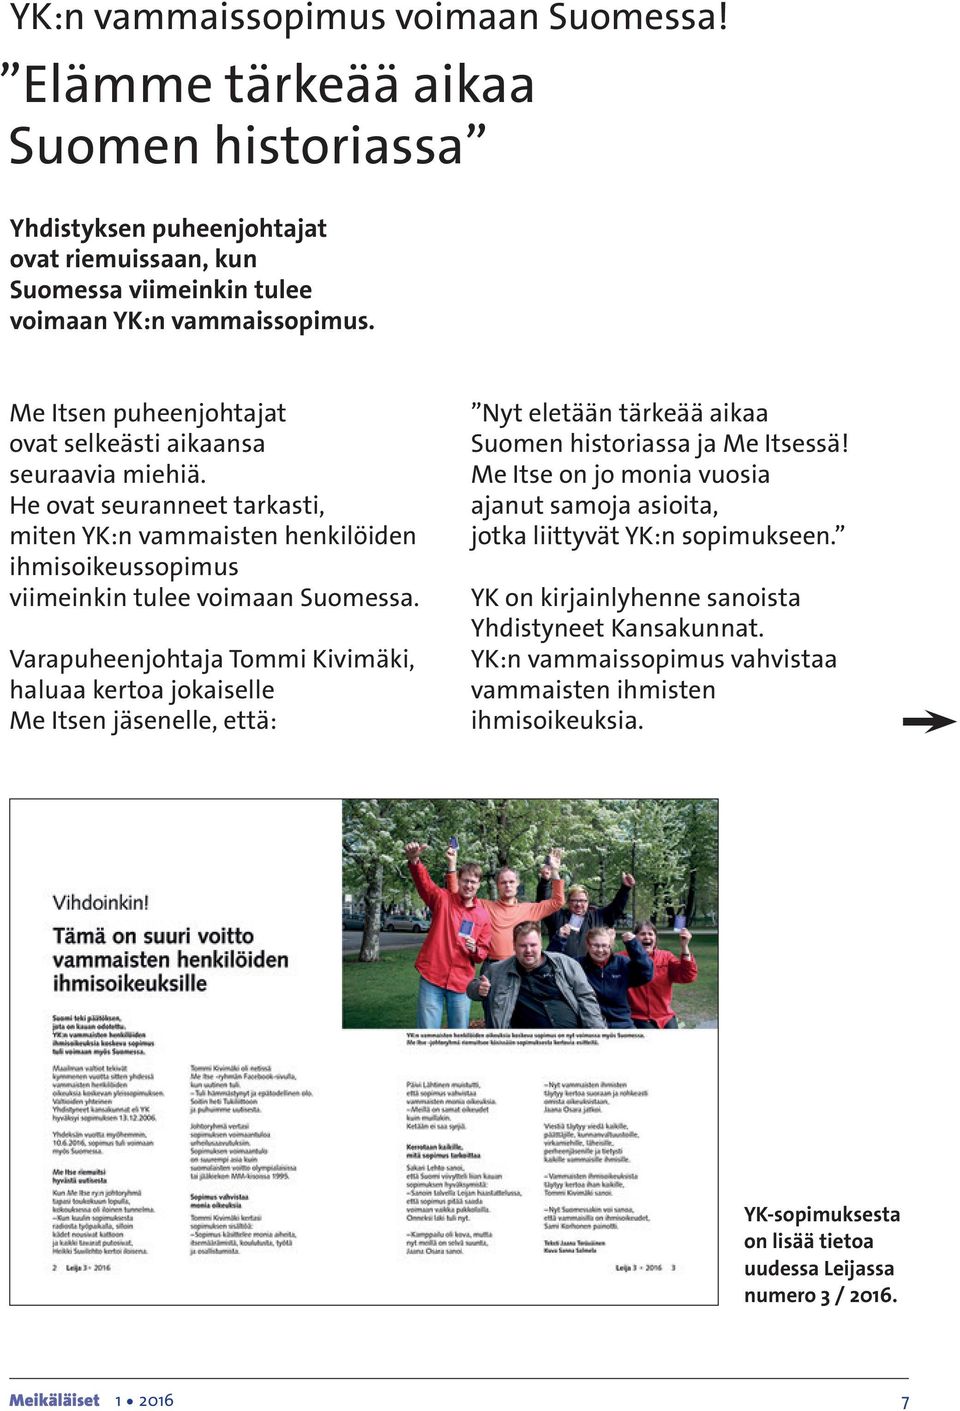 Varapuheenjohtaja Tommi Kivimäki, haluaa kertoa jokaiselle Me Itsen jäsenelle, että: Nyt eletään tärkeää aikaa Suomen historiassa ja Me Itsessä!